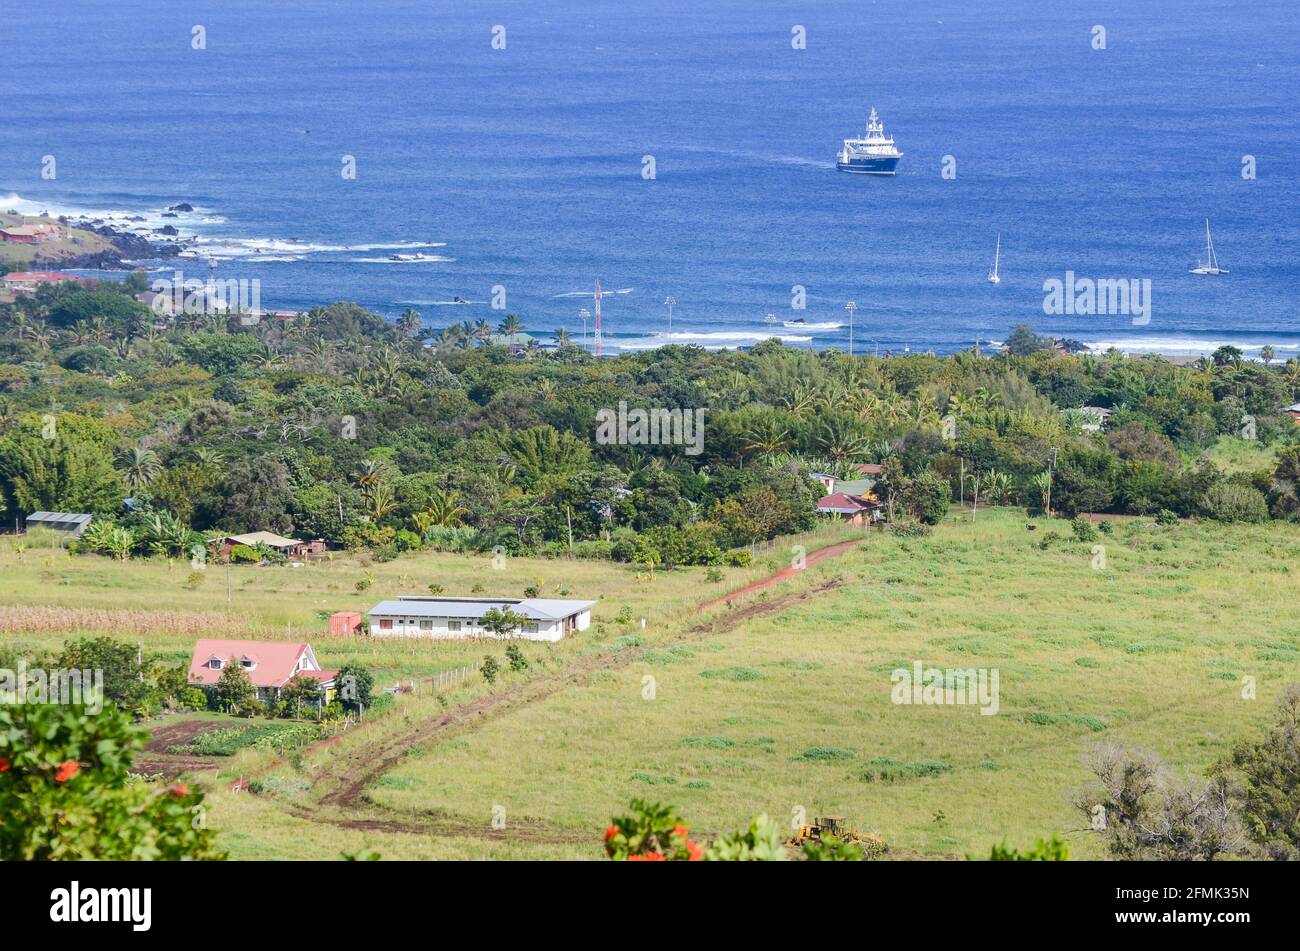 Vista di una fattoria con un campo piantato alla periferia di Hanga Roa, Isola di Pasqua, Cile. Una nave ancorata al largo della costa può essere vista sullo sfondo. Foto Stock